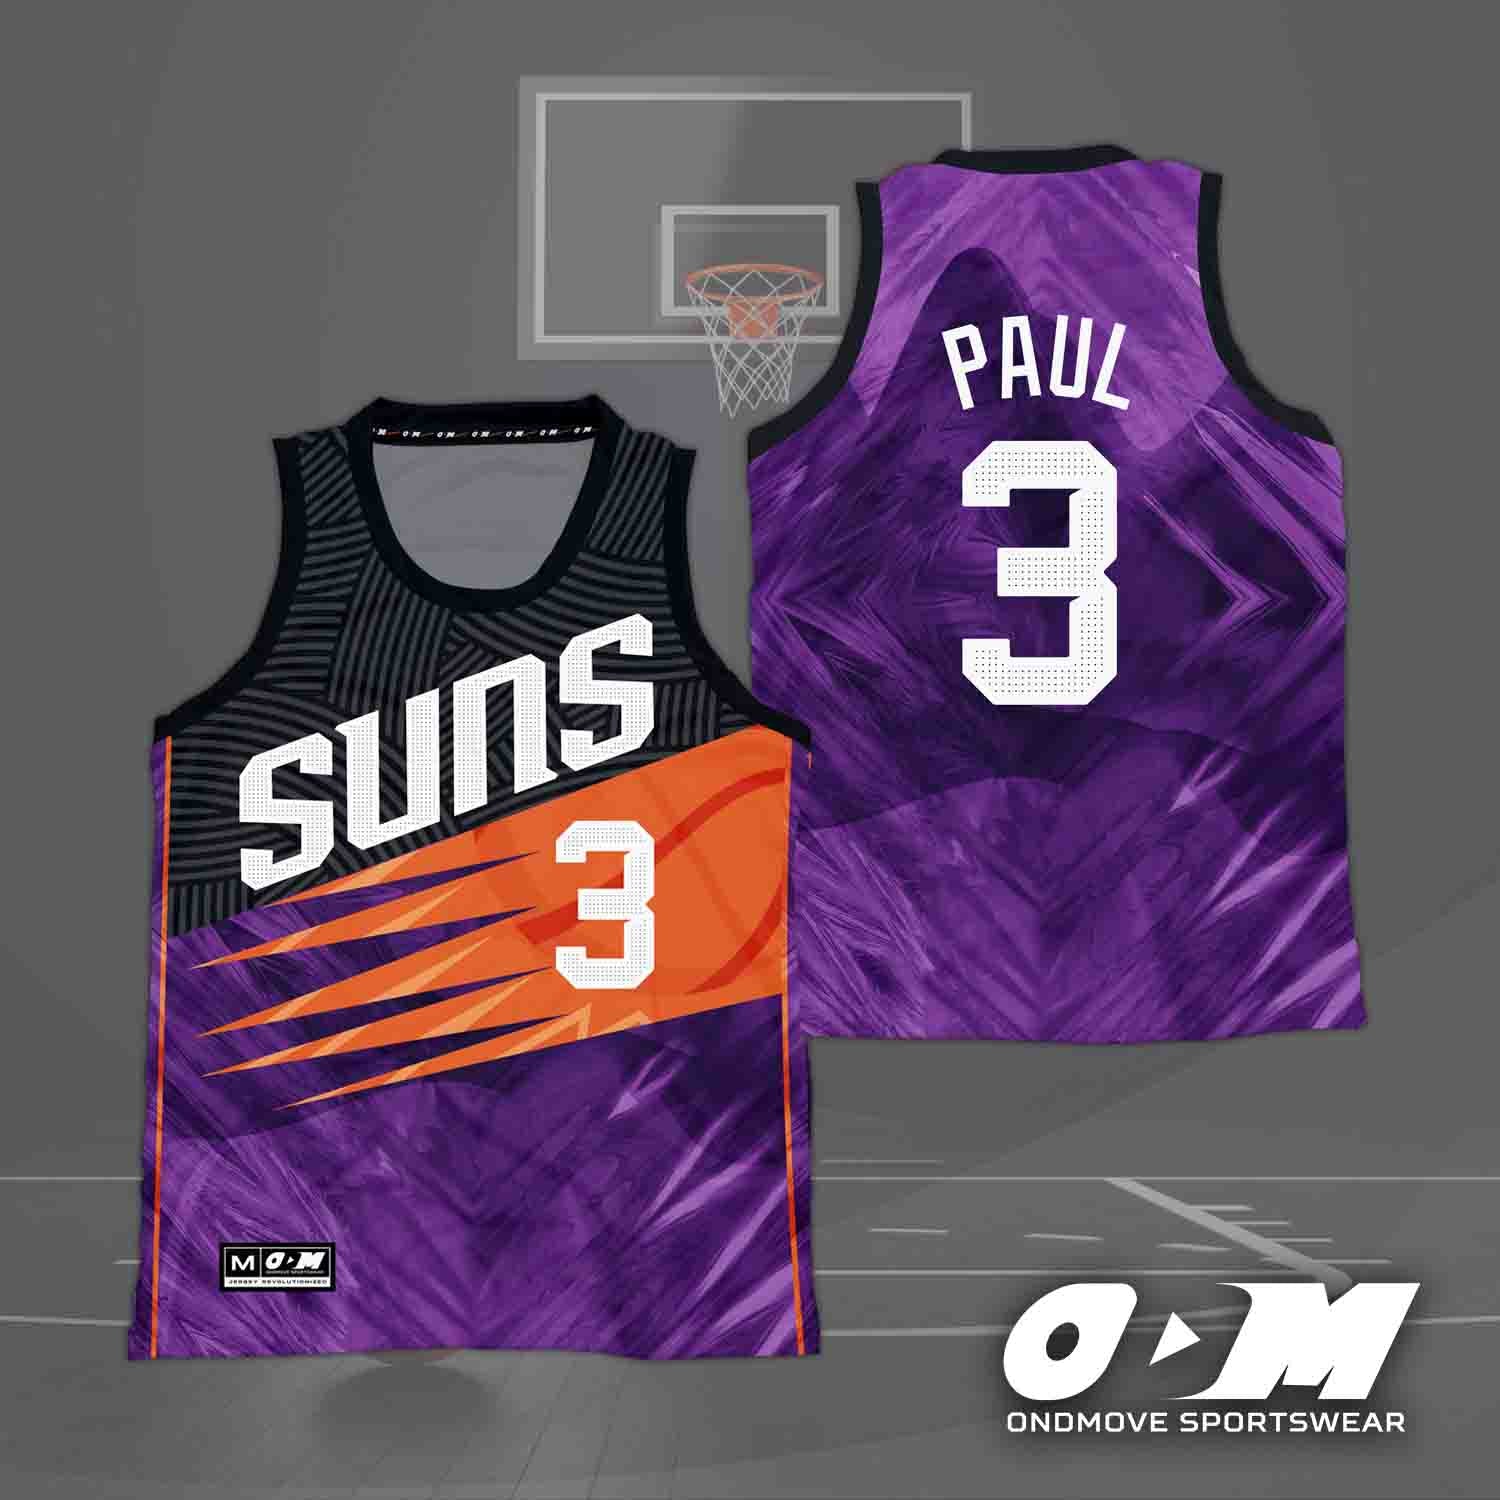 Phoenix Suns release Aztec-inspired uniform concept